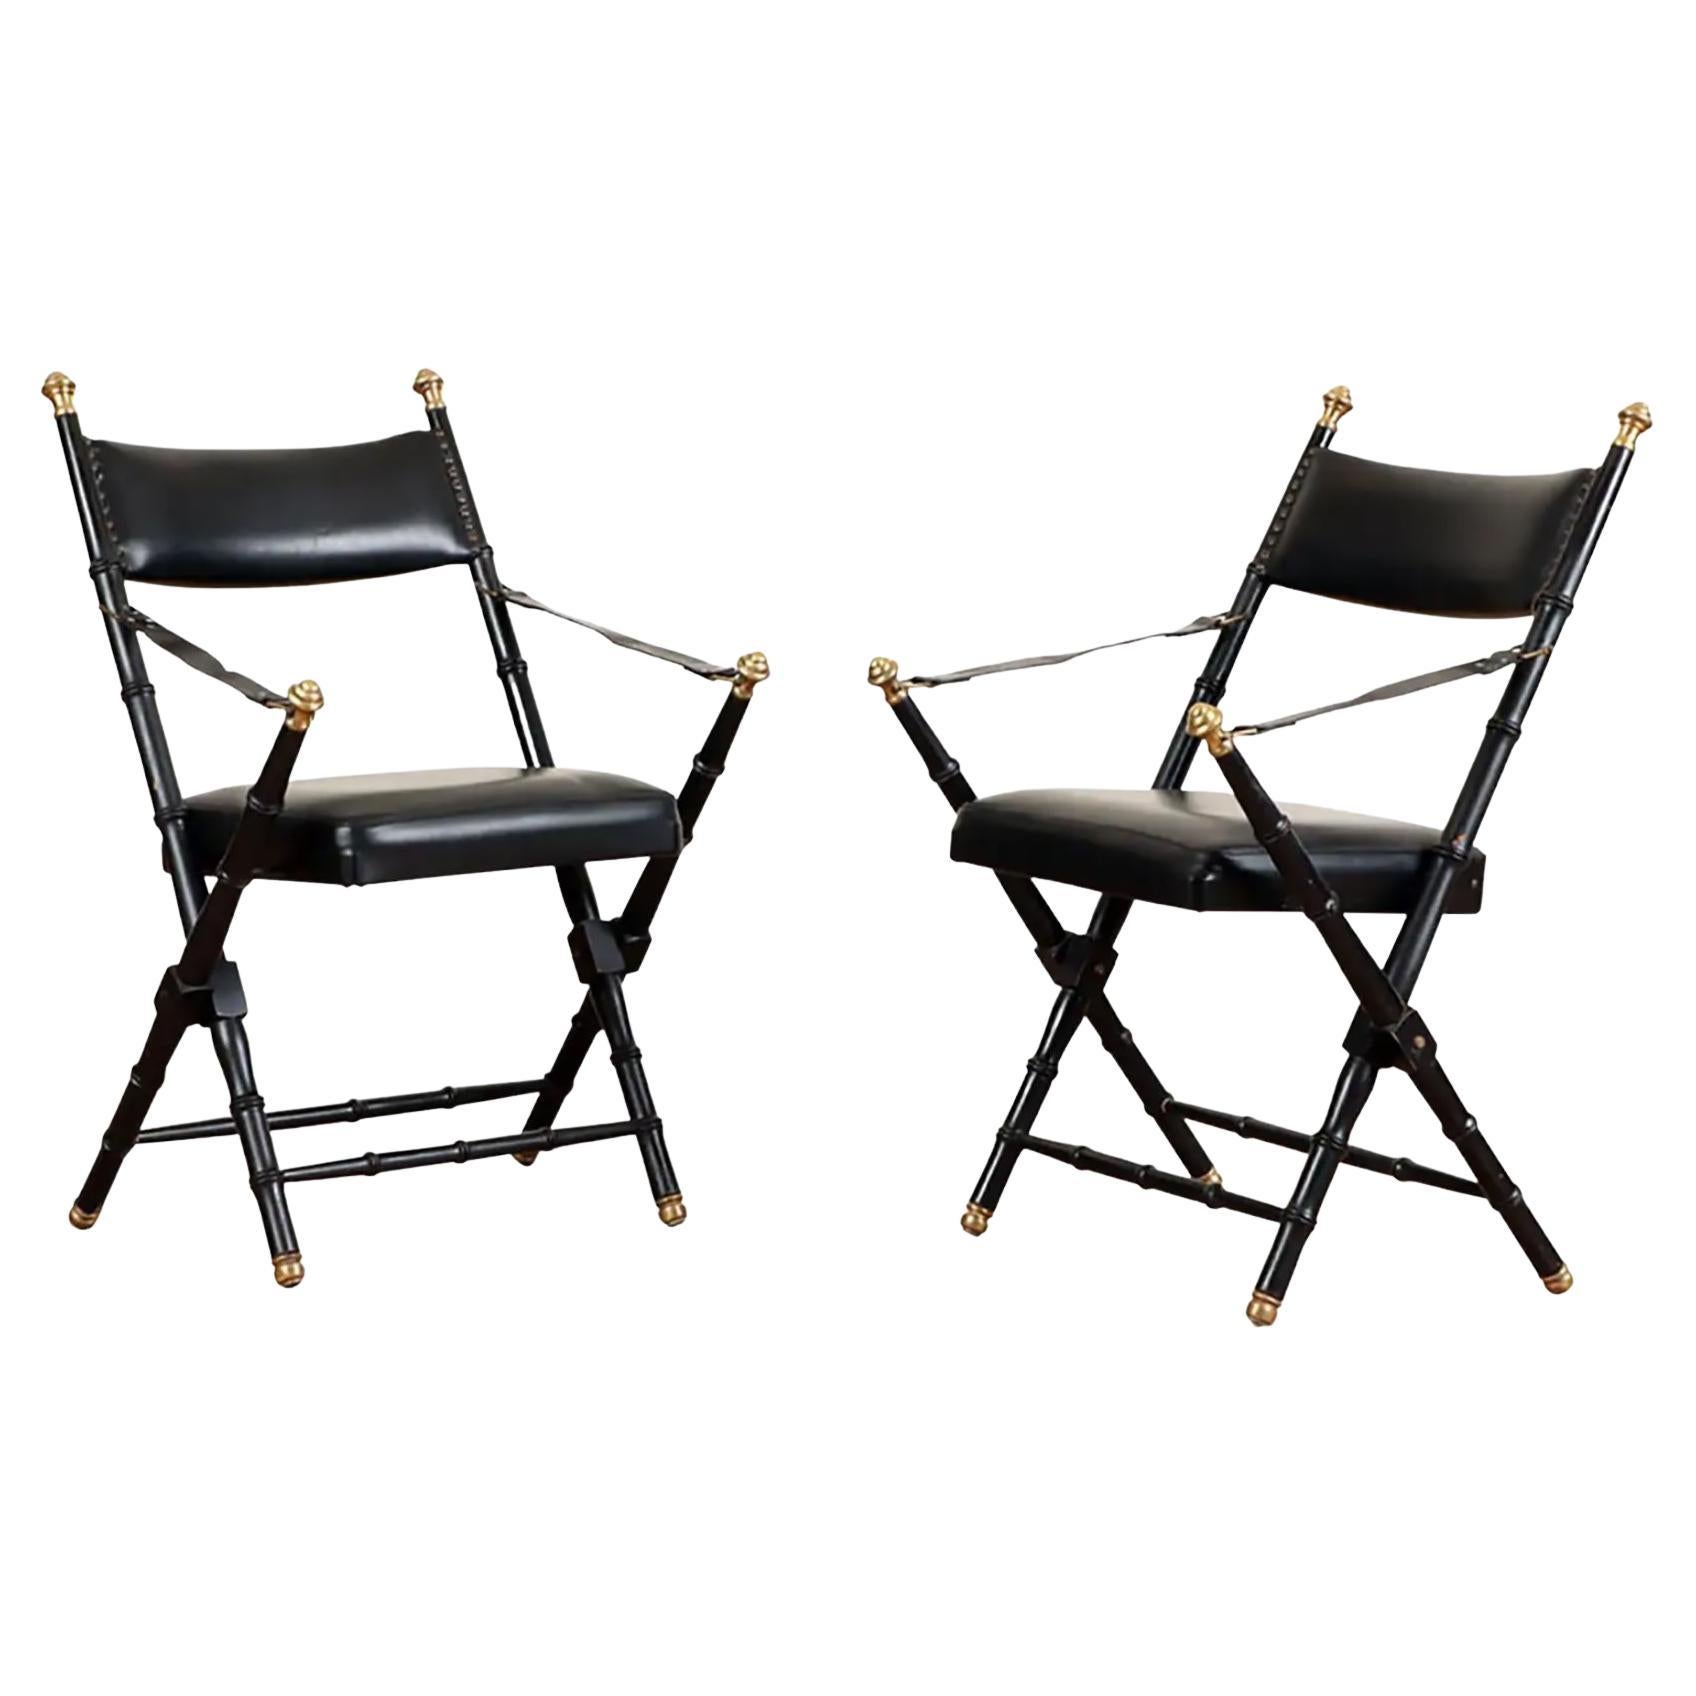 Paire de chaises pliantes françaises en cuir de style campagne avec cadres en faux bambou